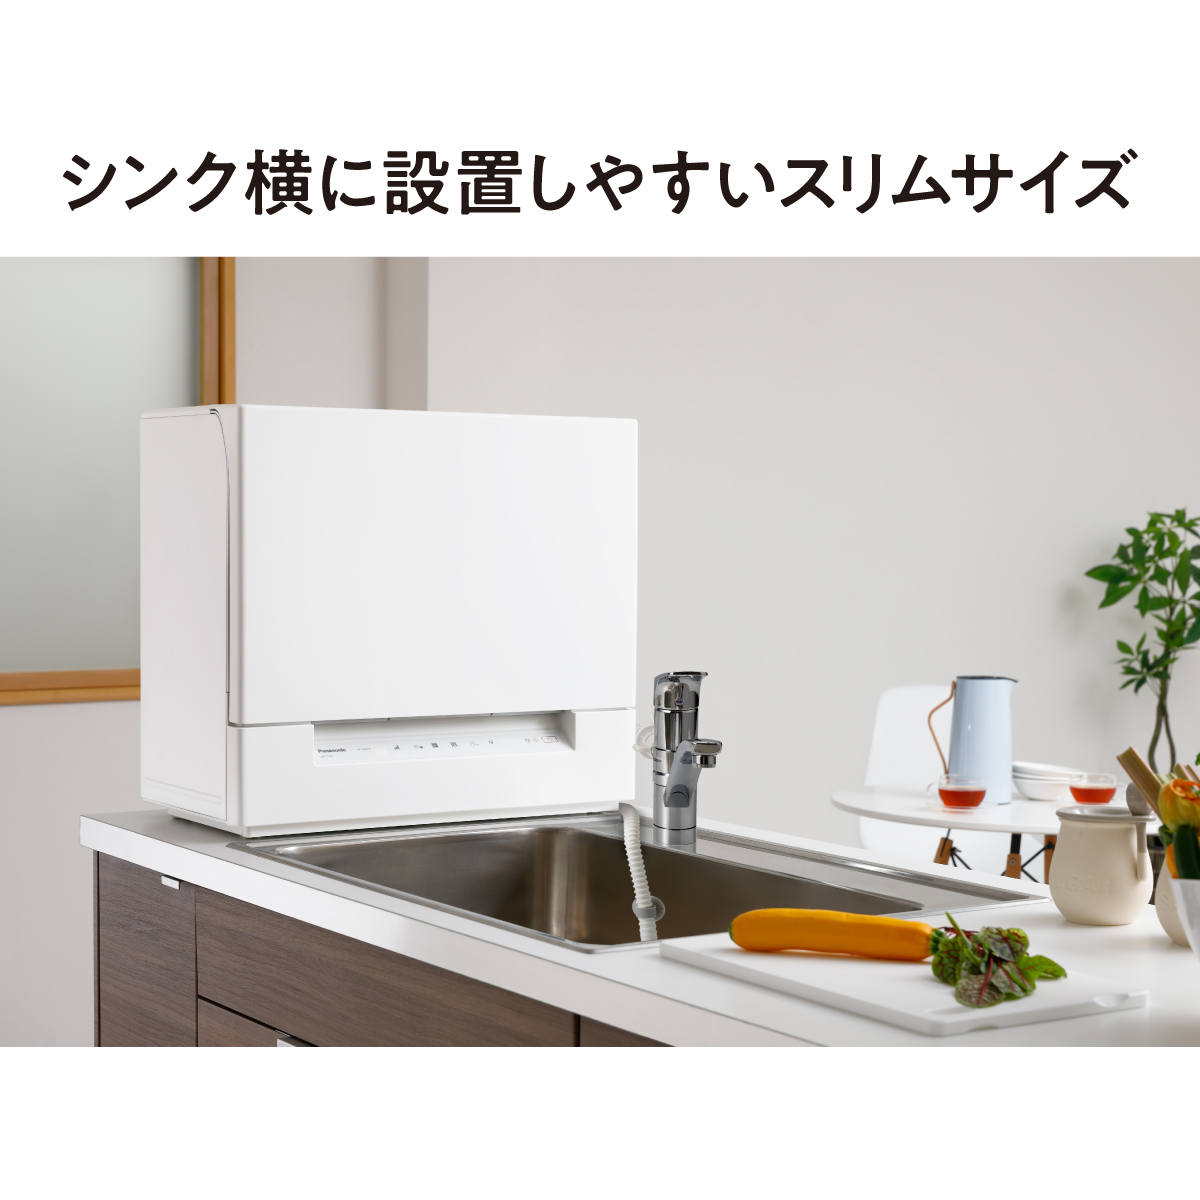 パナソニック NP-TSP1-W 食器洗い乾燥機 ホワイト|エディオン公式通販